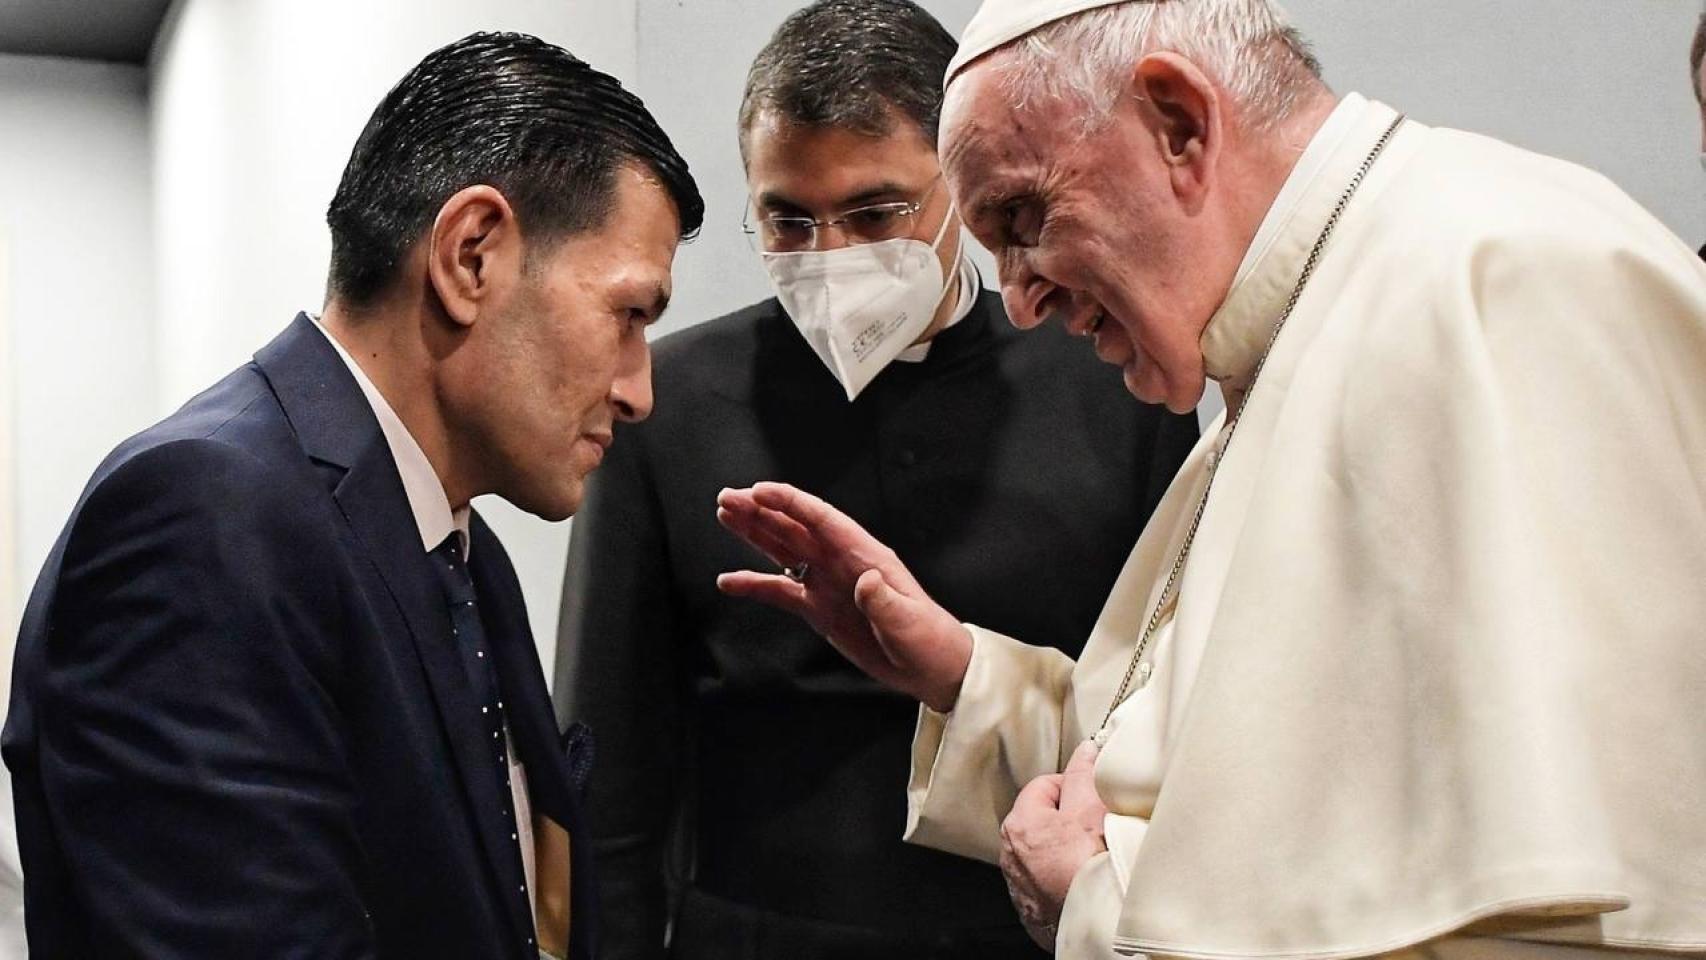 El papa Francisco durante el encuentro mantenido con el padre de Alan Kurdi.